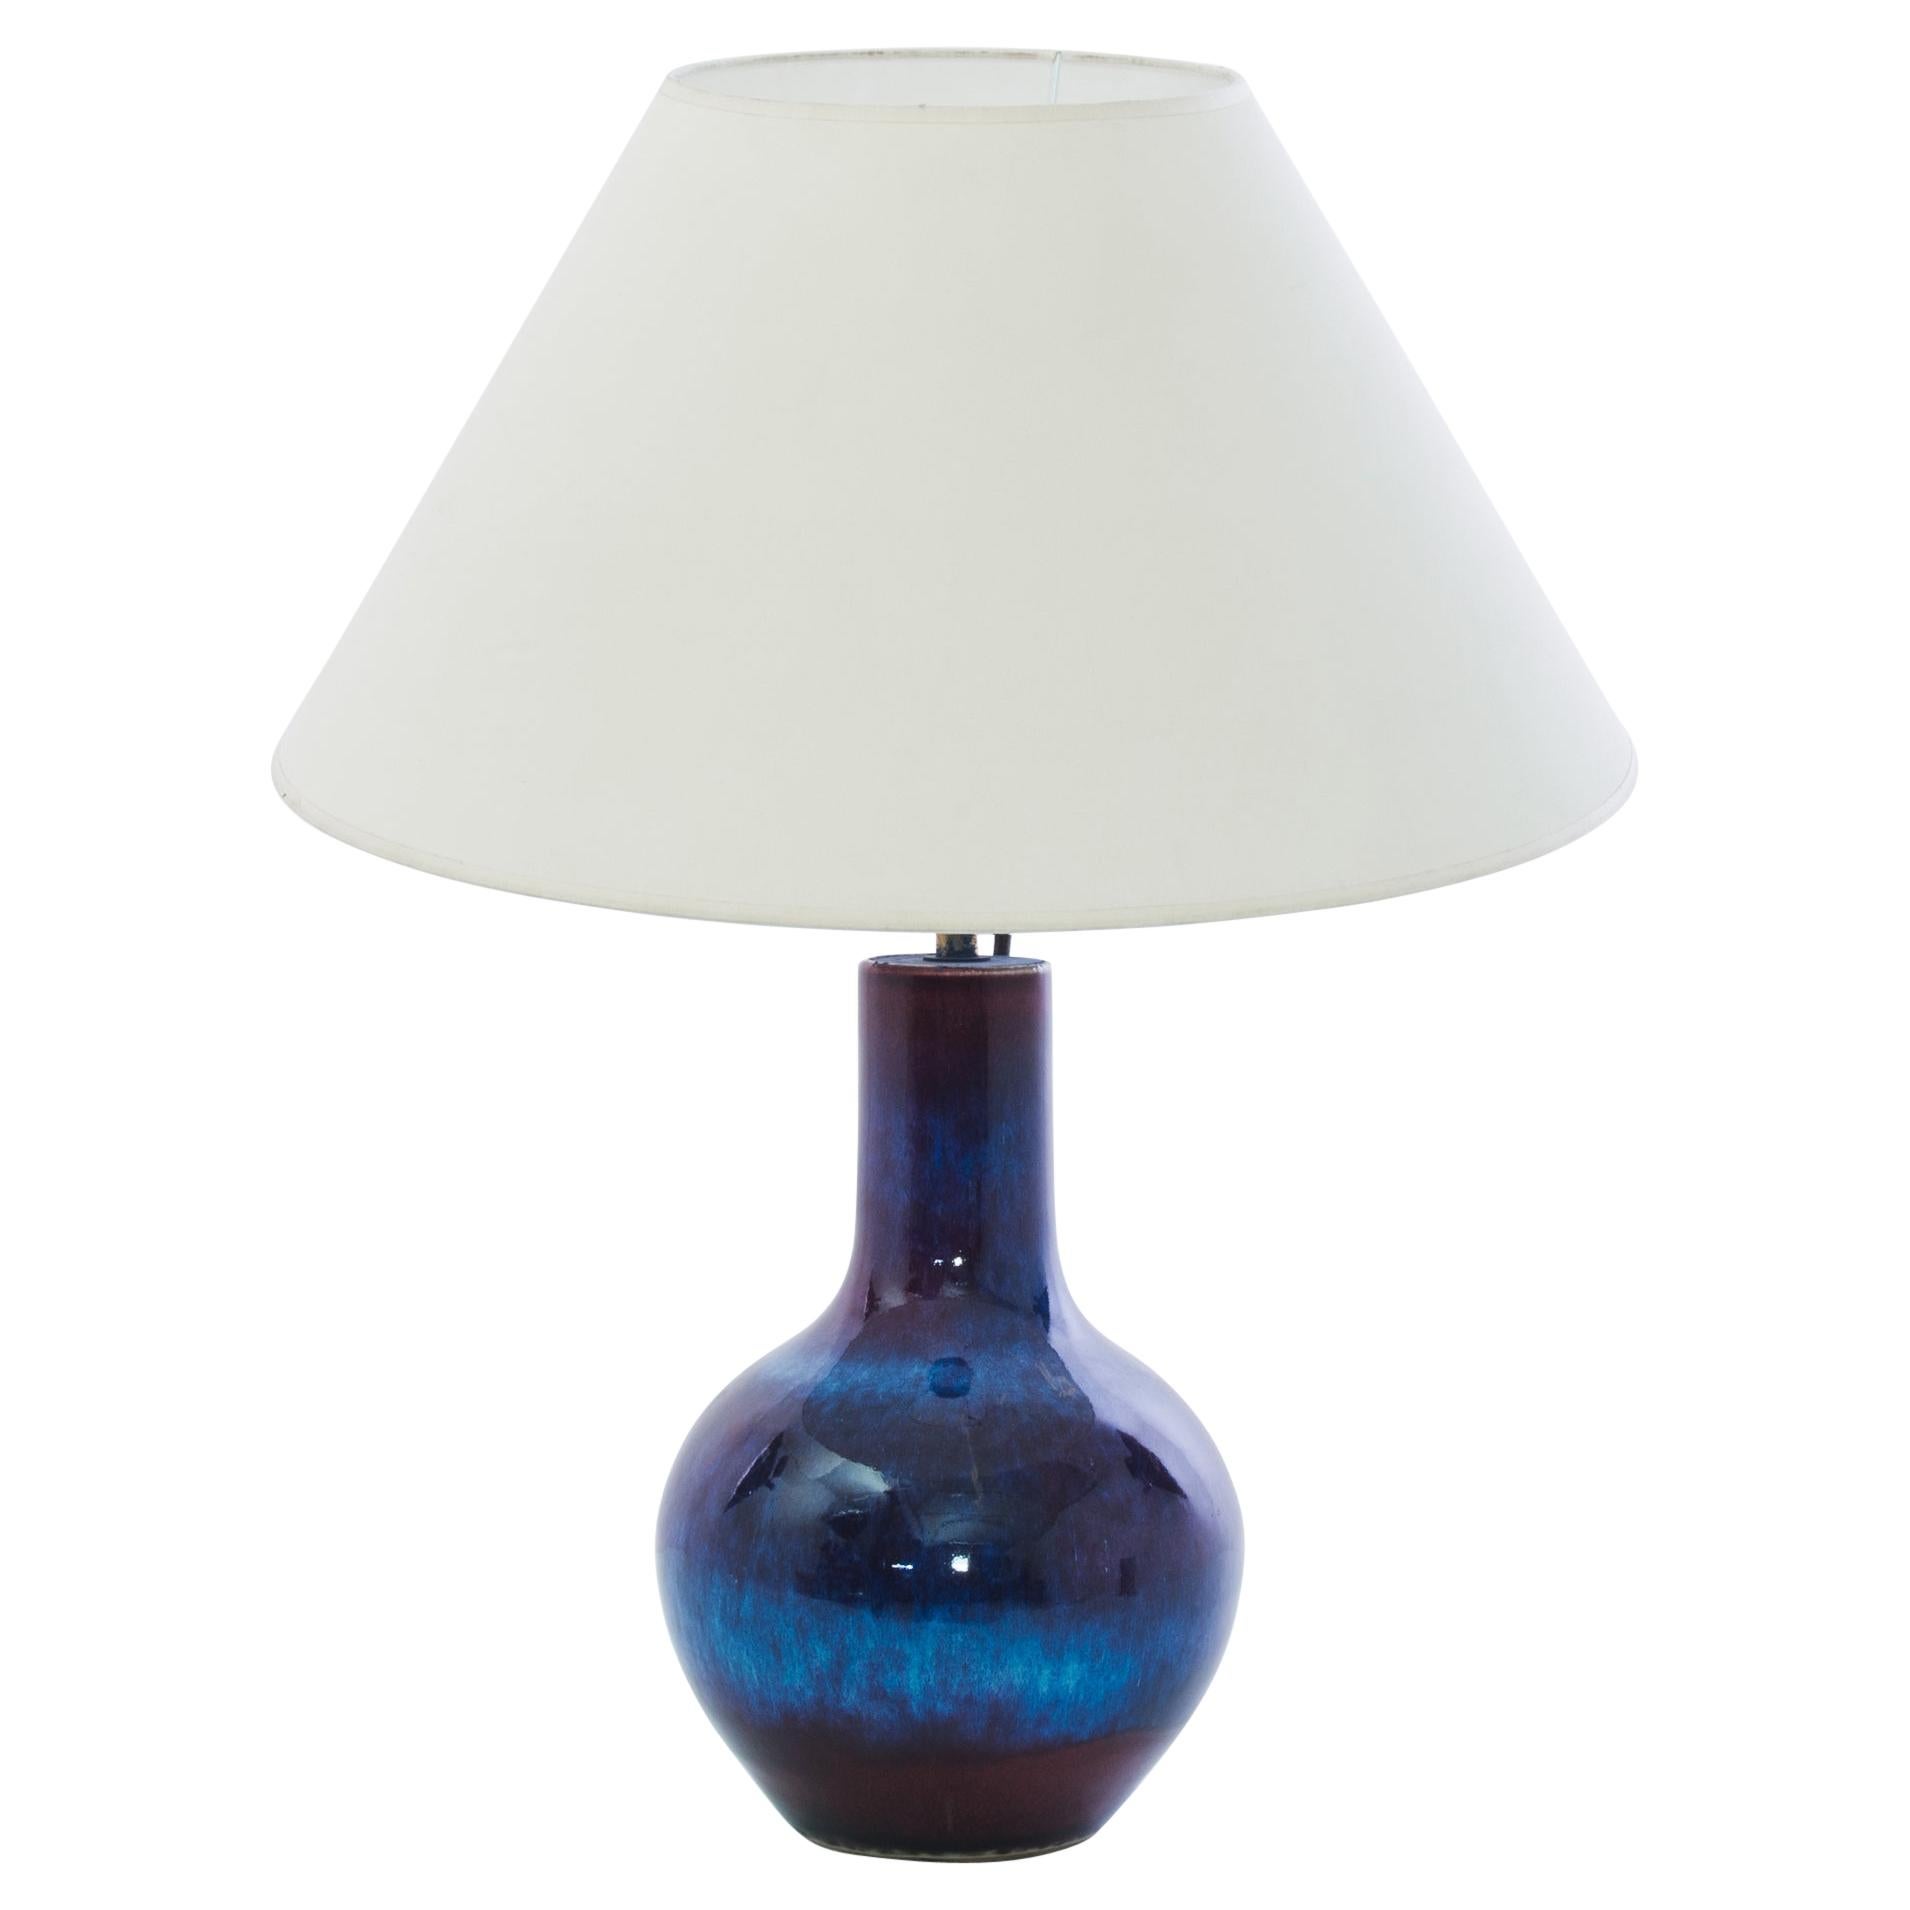 Antique Chinese Blue Stripe Ceramic Vase Table Lamp